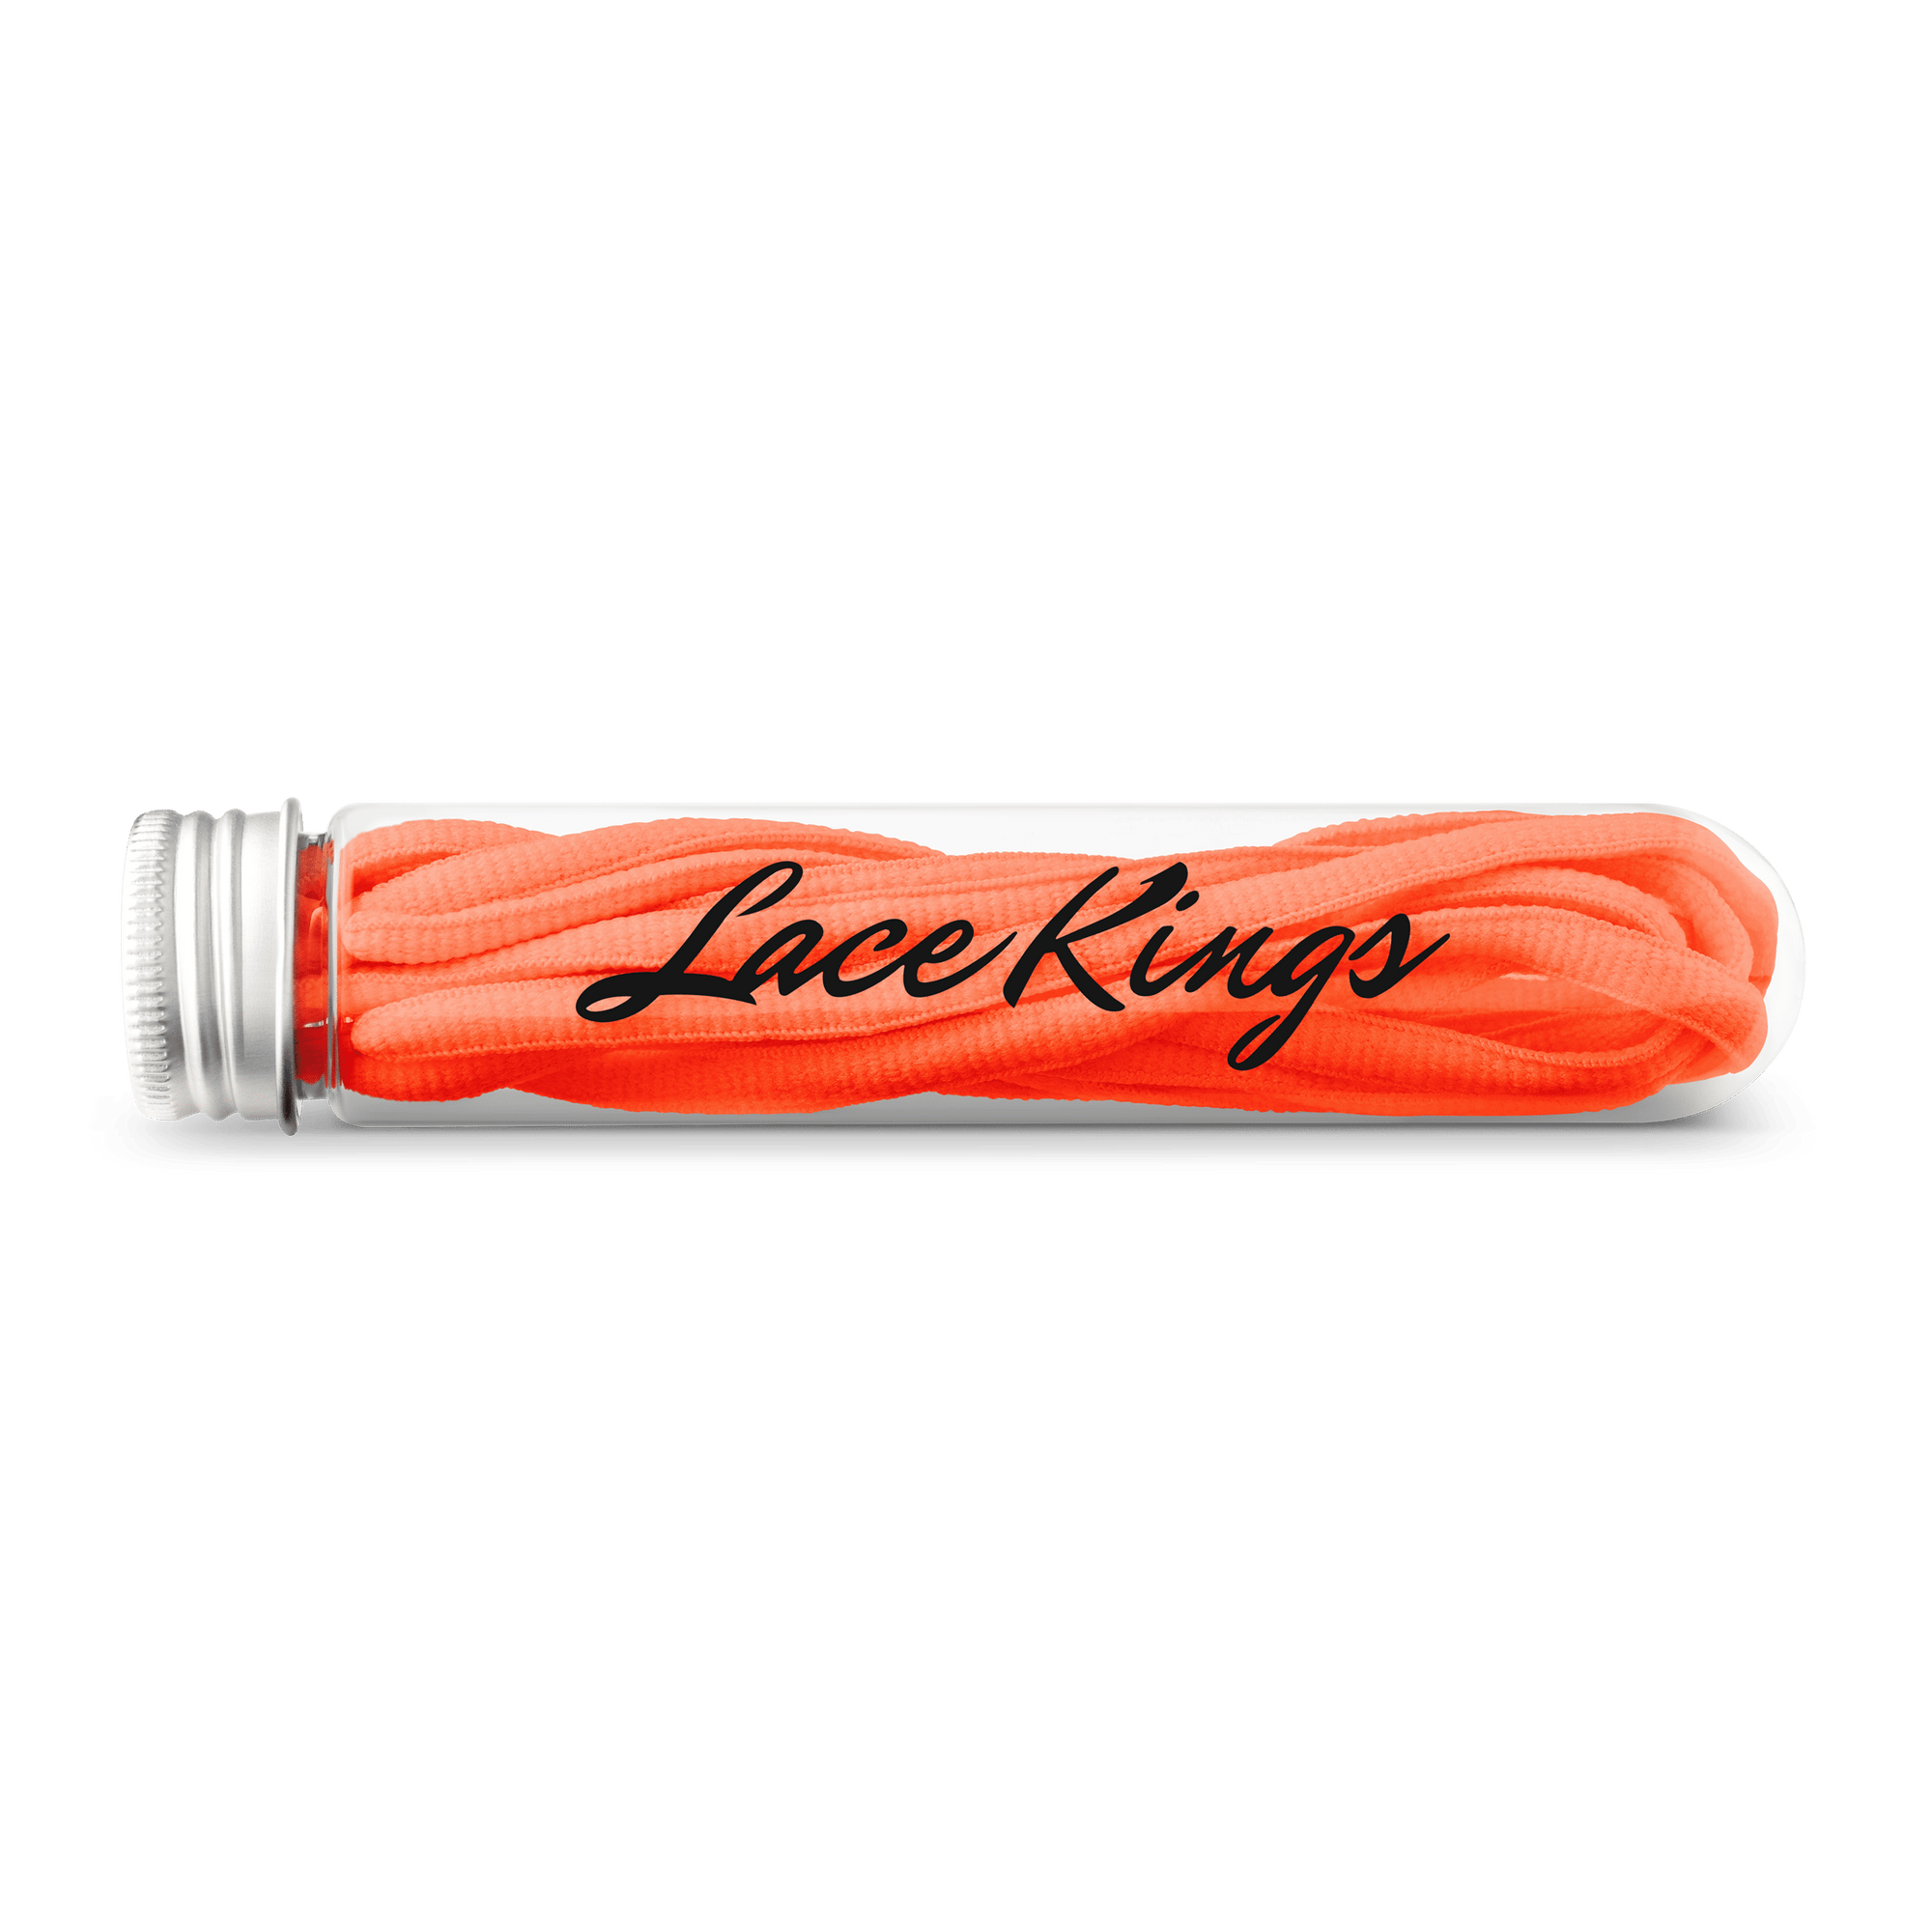 Bosuk Bling Shoe Laces - 7 Colors - Final Sale Orange